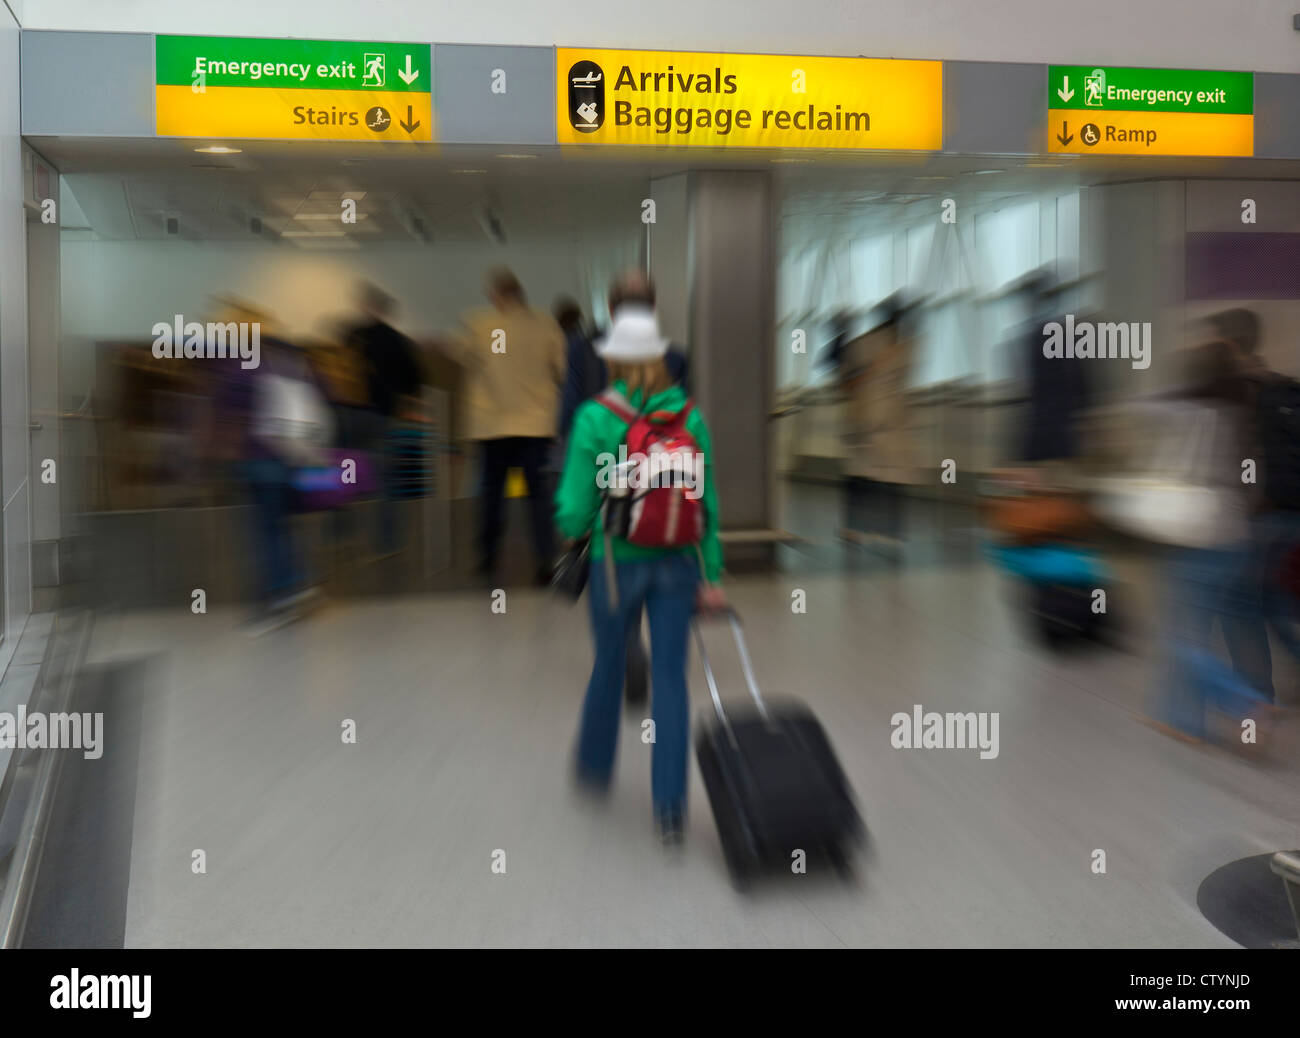 Internationalen Fluggästen, die Ankunft in London Heathrow Flughafen in Richtung an- und Gepäck zurückfordern Bereiche Stockfoto